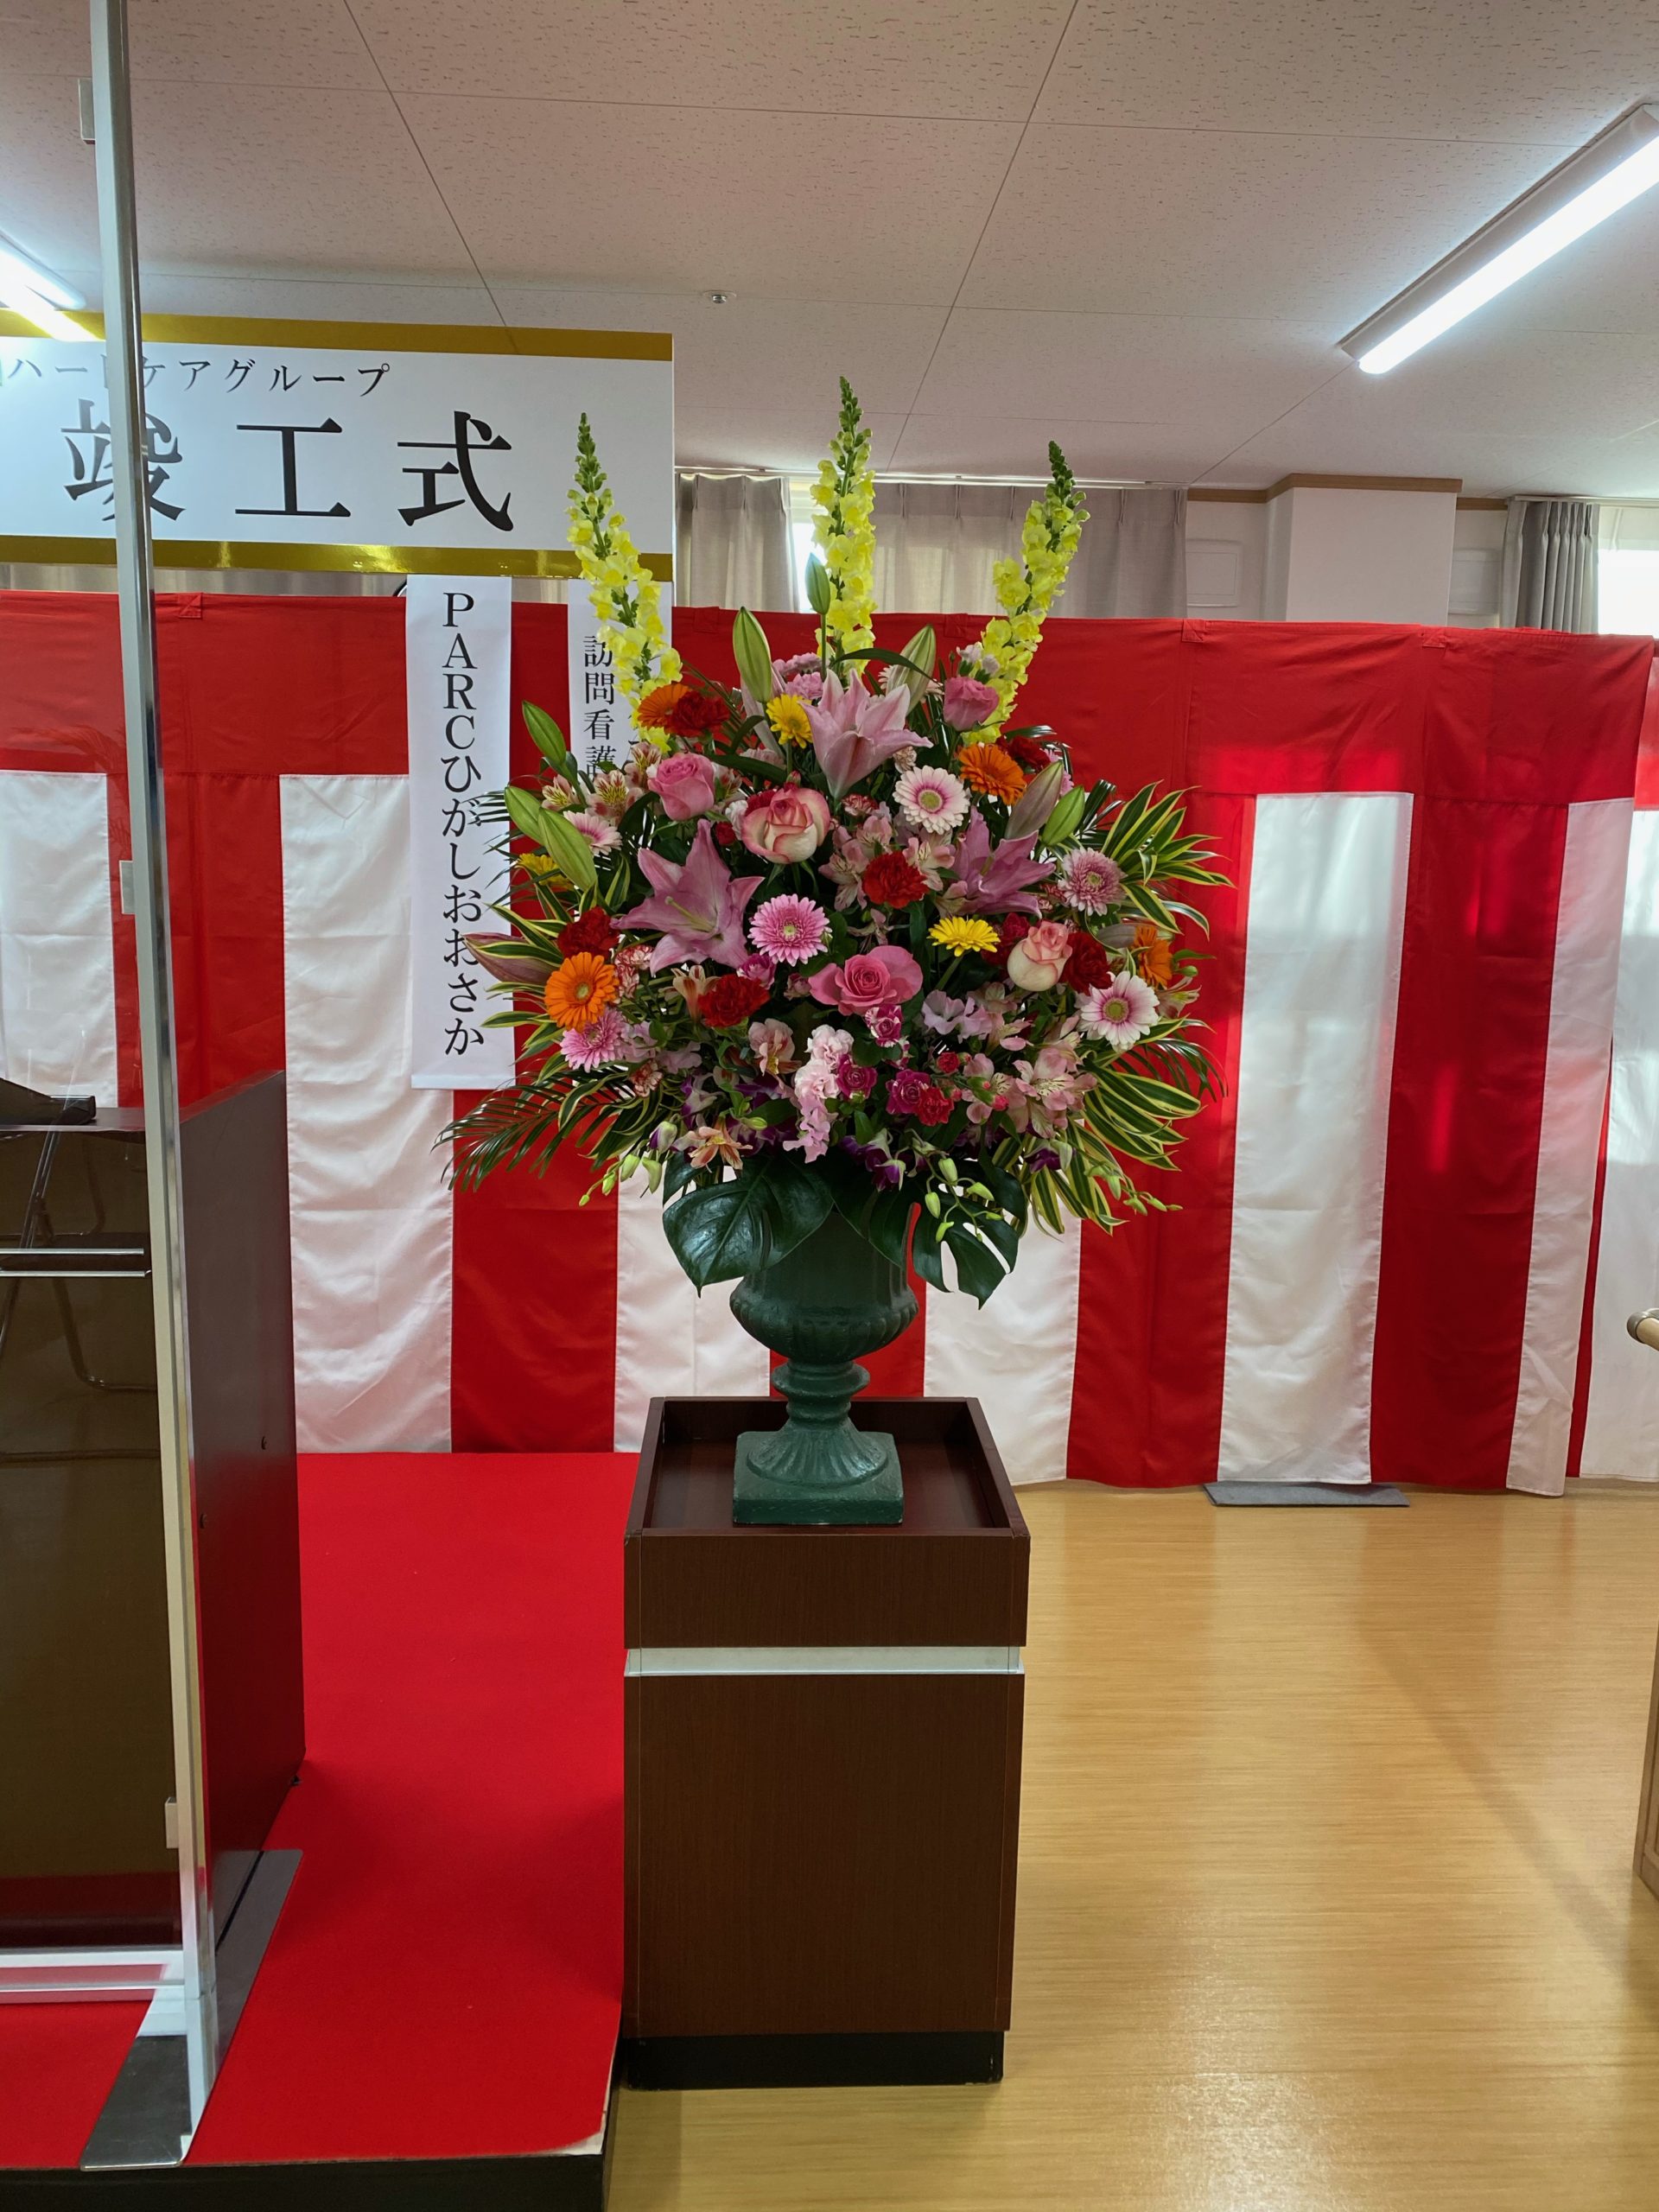 大阪で式典花をお求めの方 イベント21へお任せください 大阪イベント会社